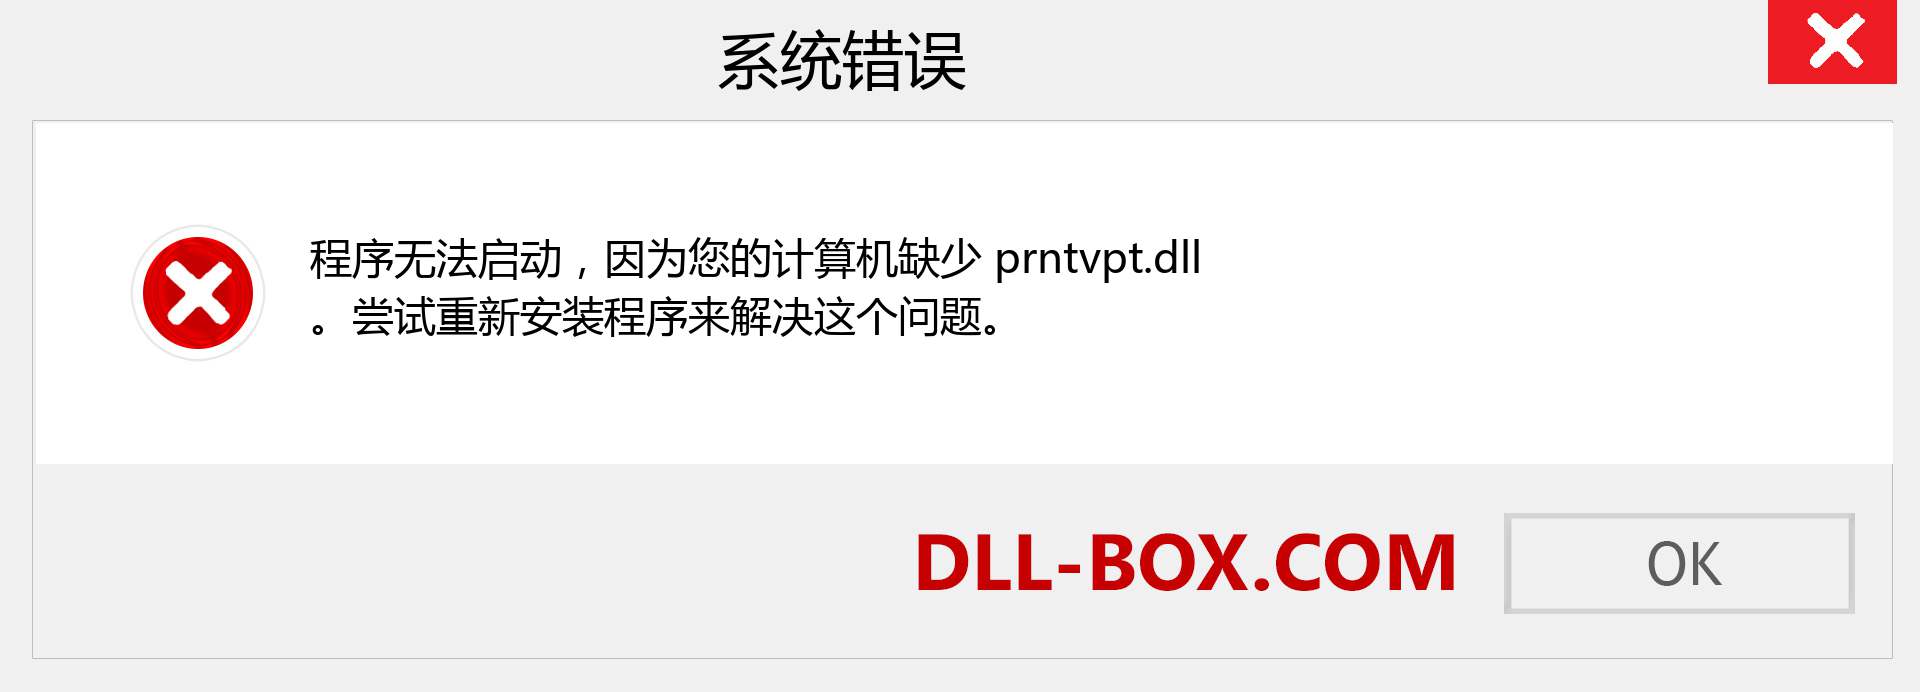 prntvpt.dll 文件丢失？。 适用于 Windows 7、8、10 的下载 - 修复 Windows、照片、图像上的 prntvpt dll 丢失错误